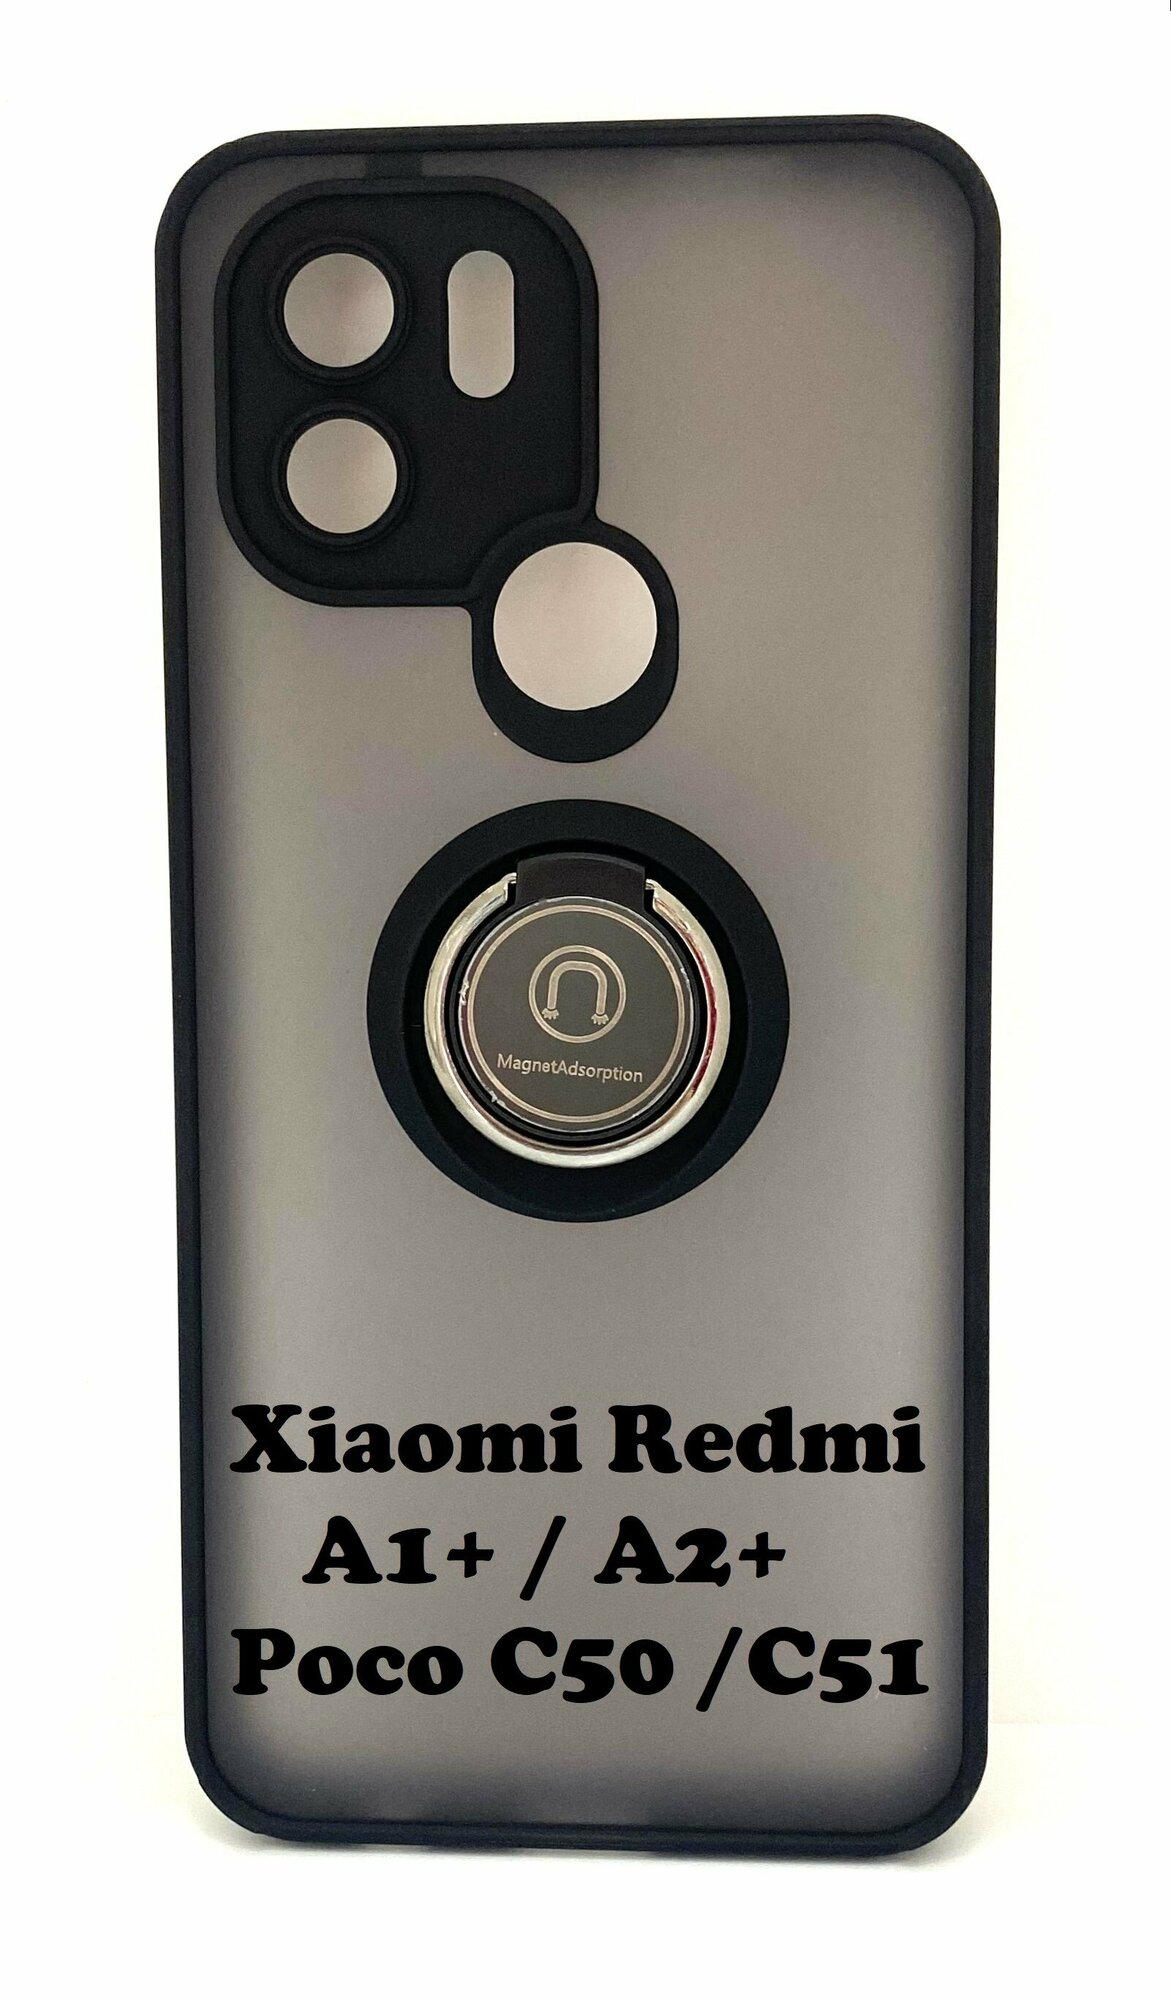 Чехол Xiaomi Redmi A1+ / A2+ / POCO C50 / POCO C51 противоударный (Брони чехол) с кольцом-подставкой и металлической пластиной